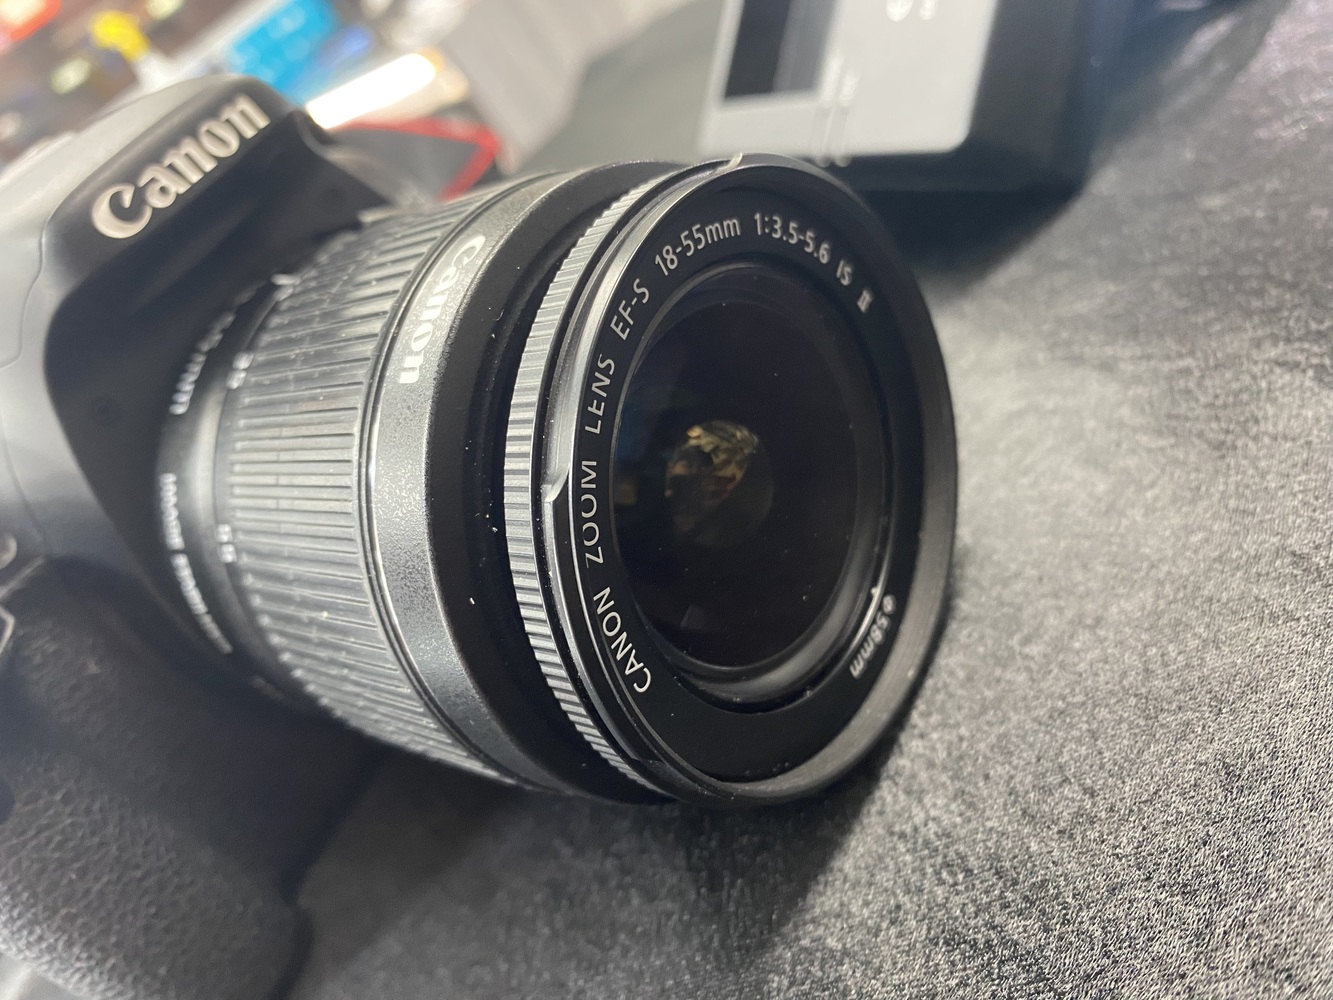 Canon EOS Rebel T2I Camera